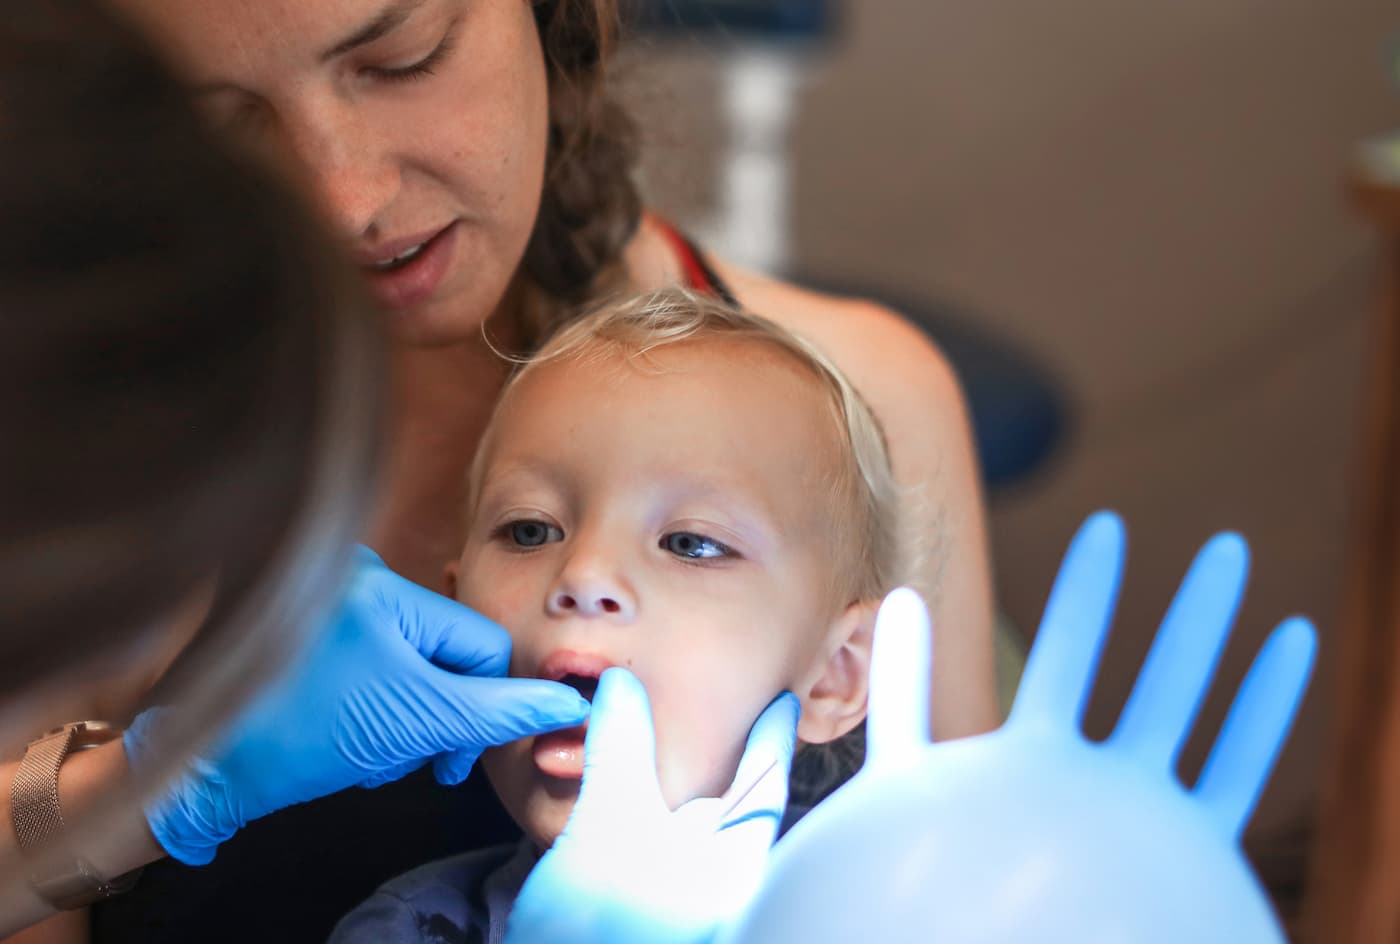 Πρώτη επίσκεψη στον οδοντίατρο: Πότε πρέπει να προγραμματιστεί